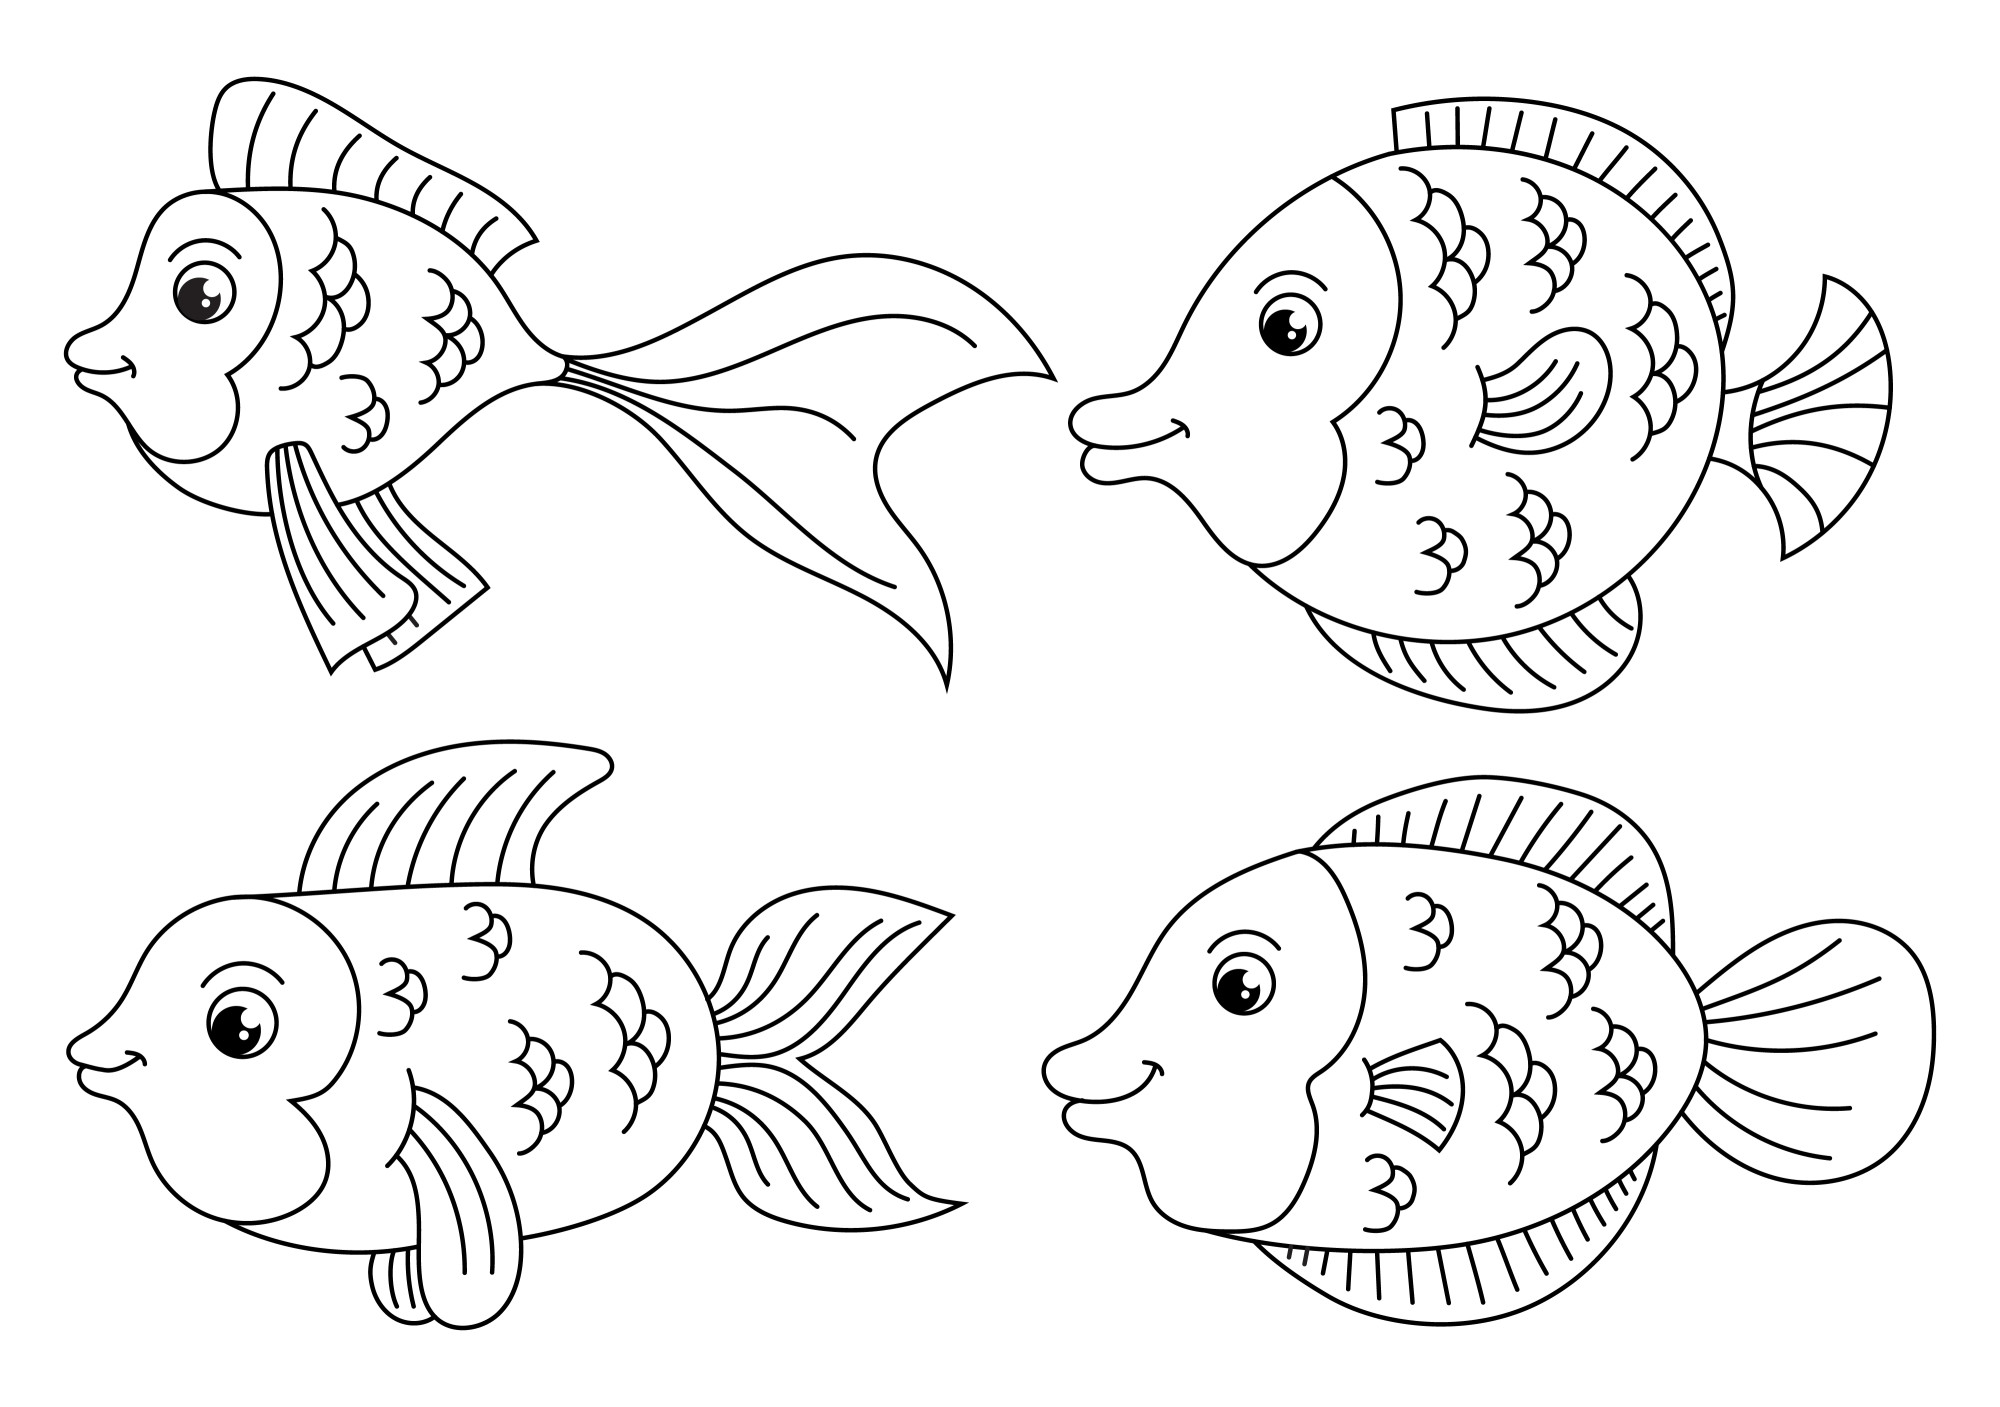 Раскраска для детей: забавные рыбки